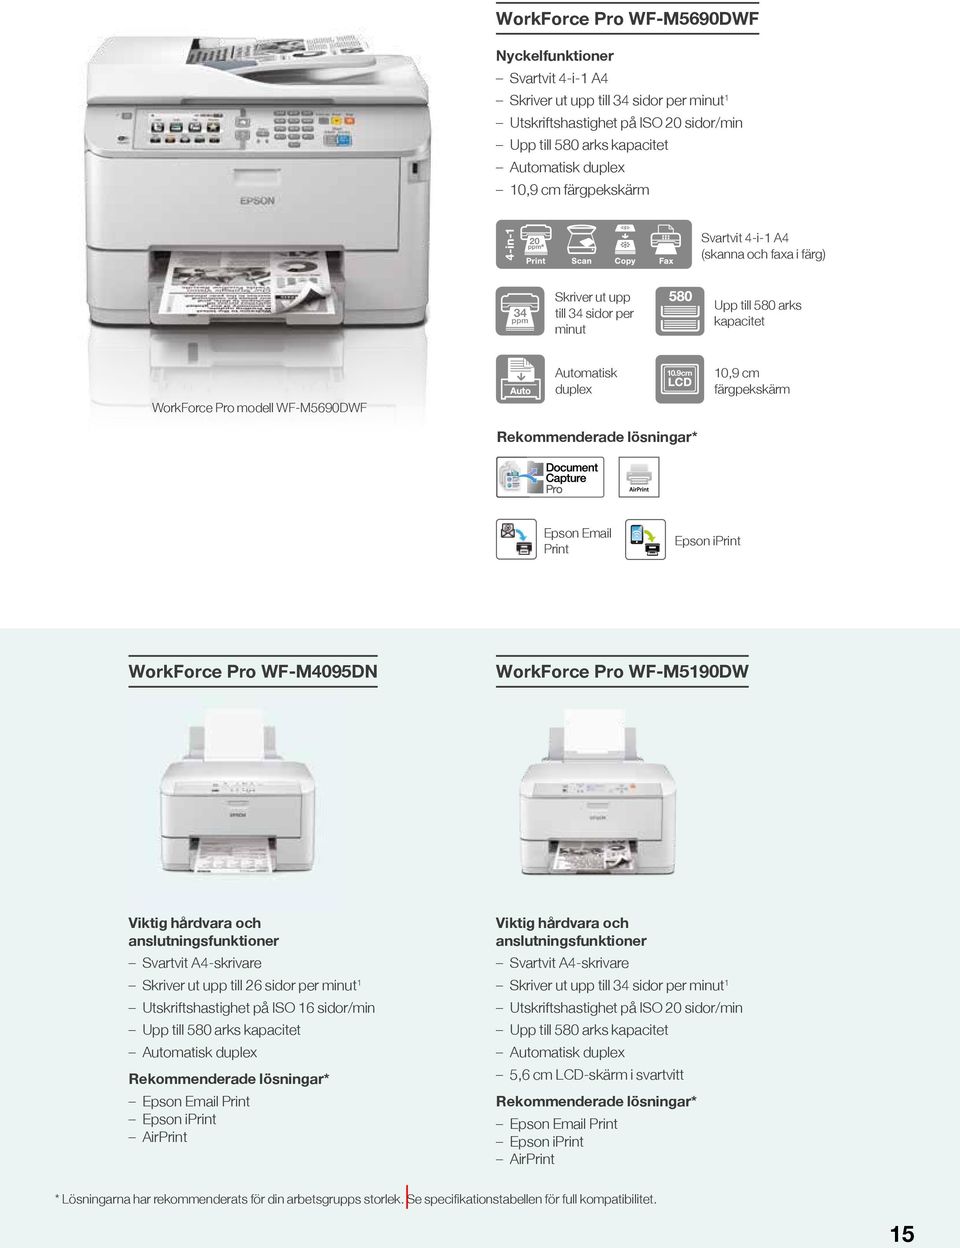 9cm 10,9 cm färgpekskärm Epson Email Print Epson iprint WorkForce Pro WF-M4095DN WorkForce Pro WF-M5190DW Viktig hårdvara och anslutningsfunktioner Svartvit A4-skrivare Skriver ut upp till 26 sidor